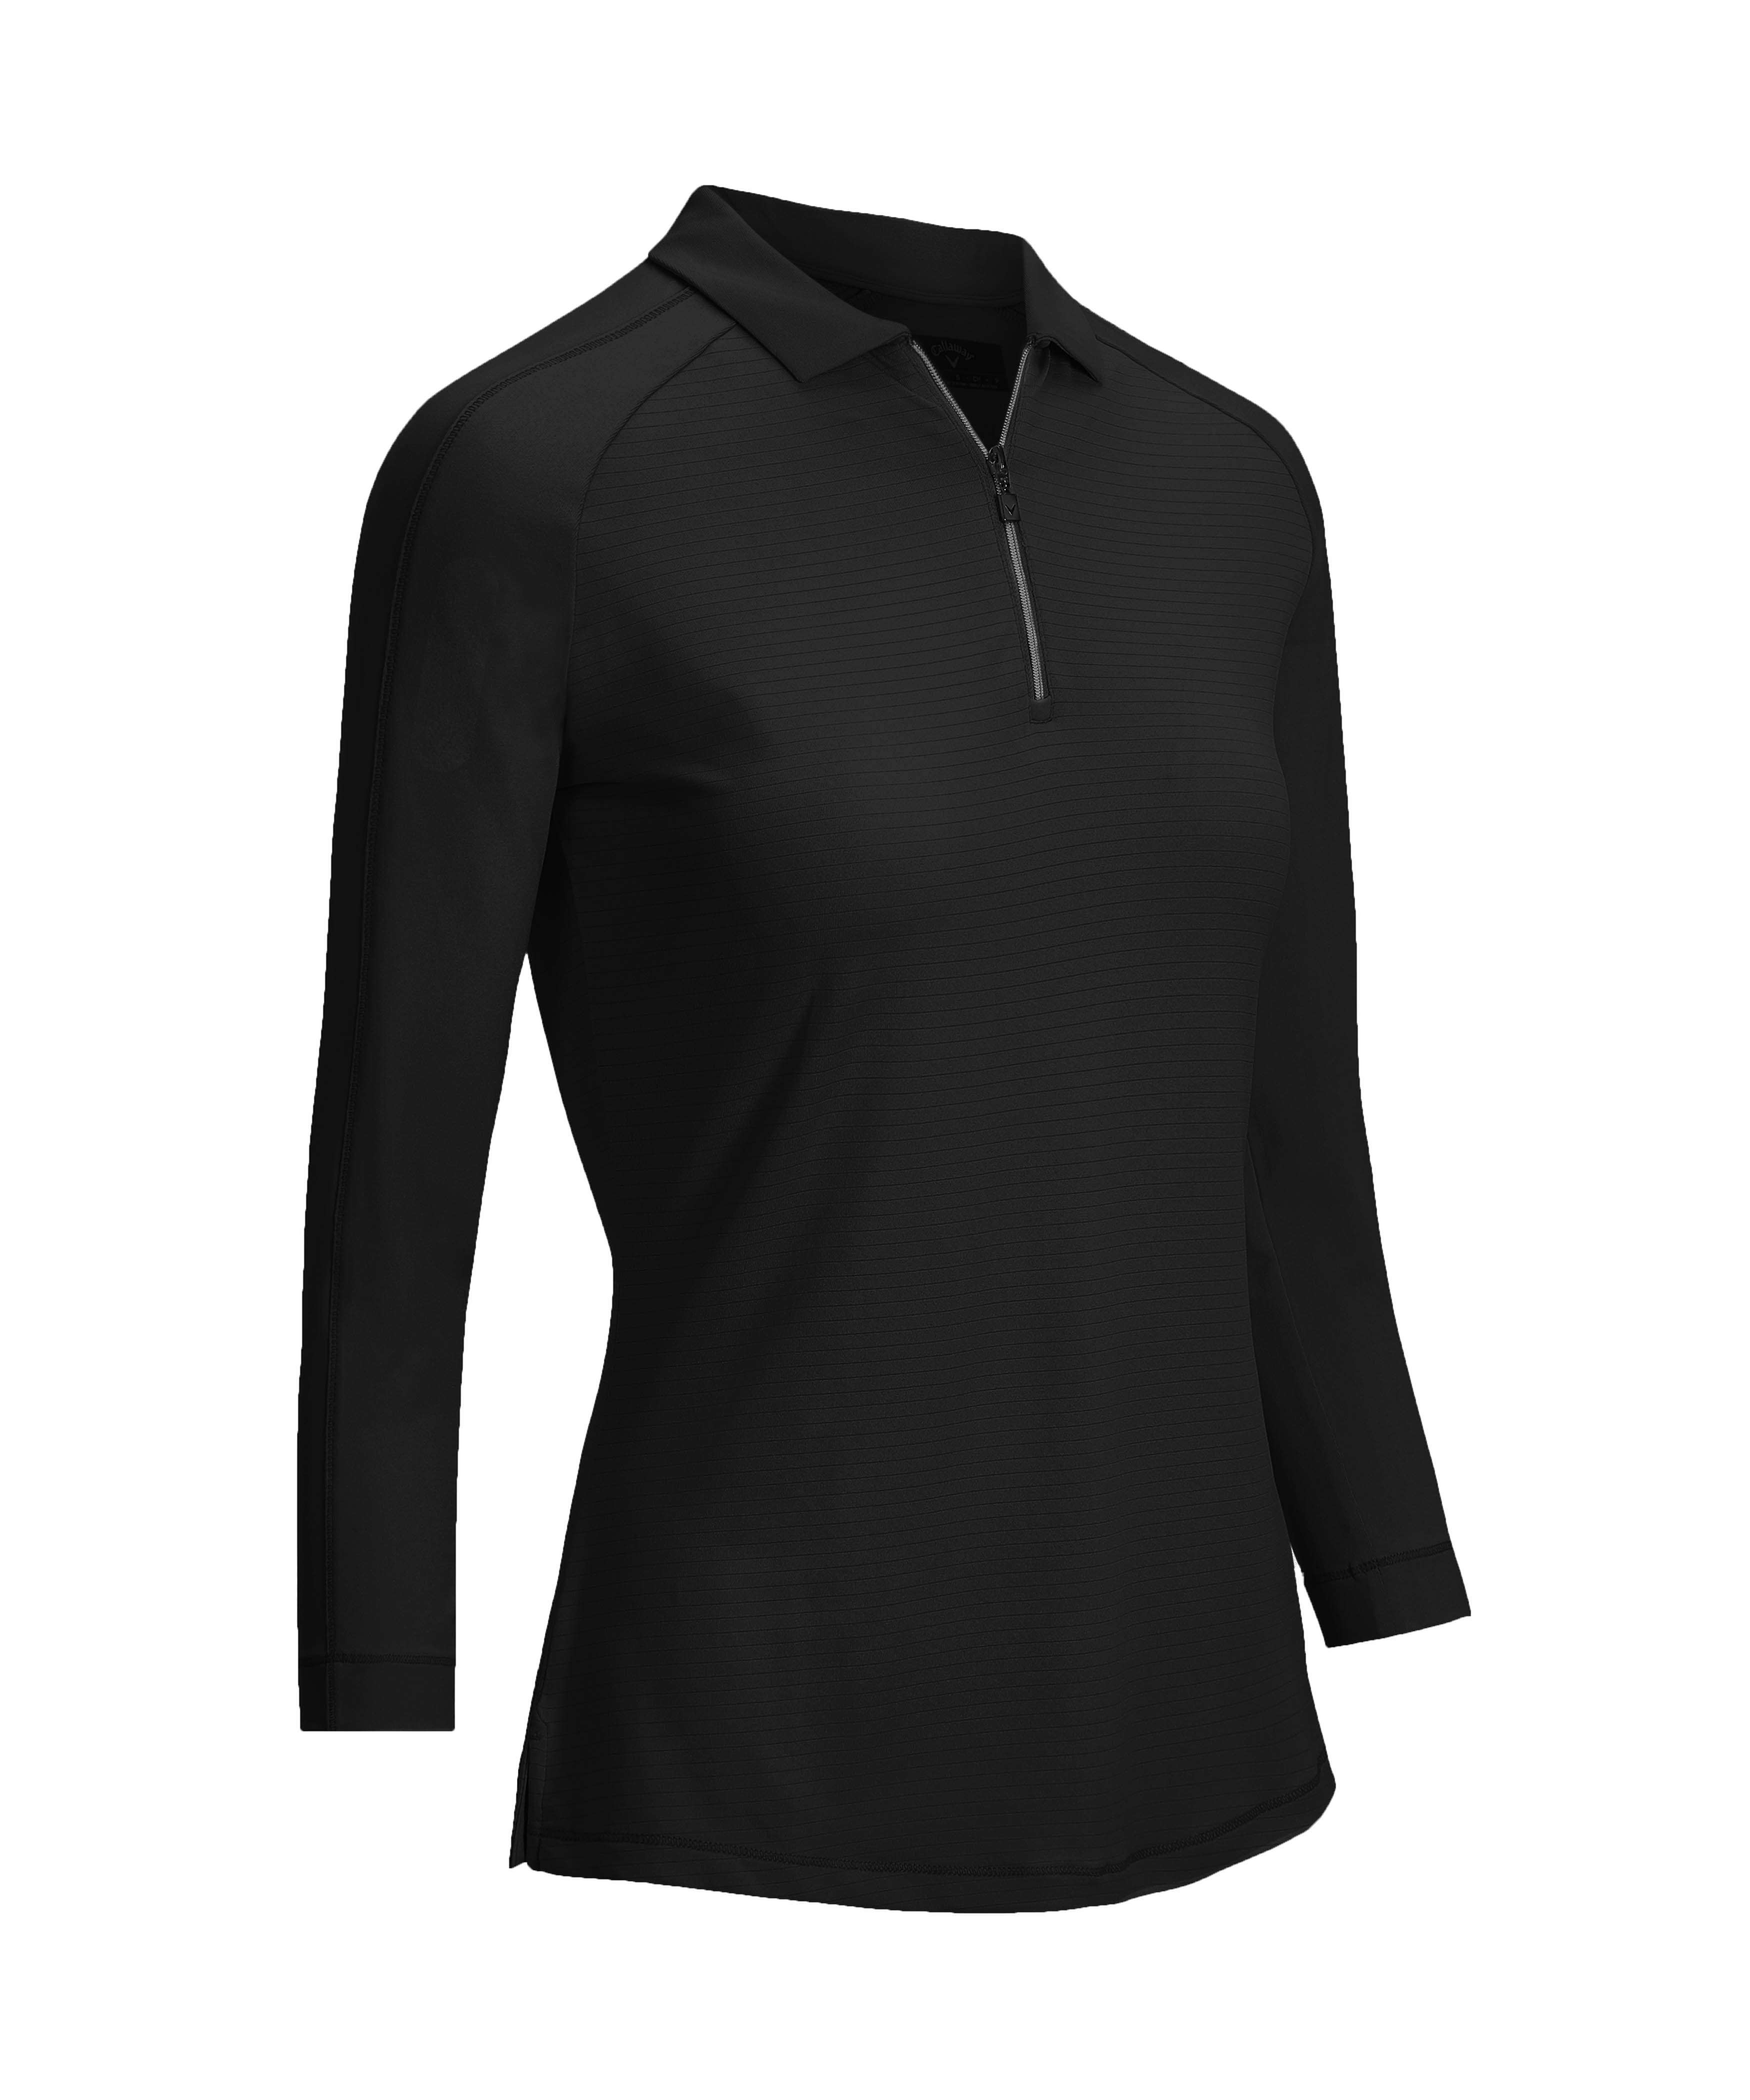 Levně Callaway Shadow Stripe dámské golfové triko s 3/4 rukávem, černé